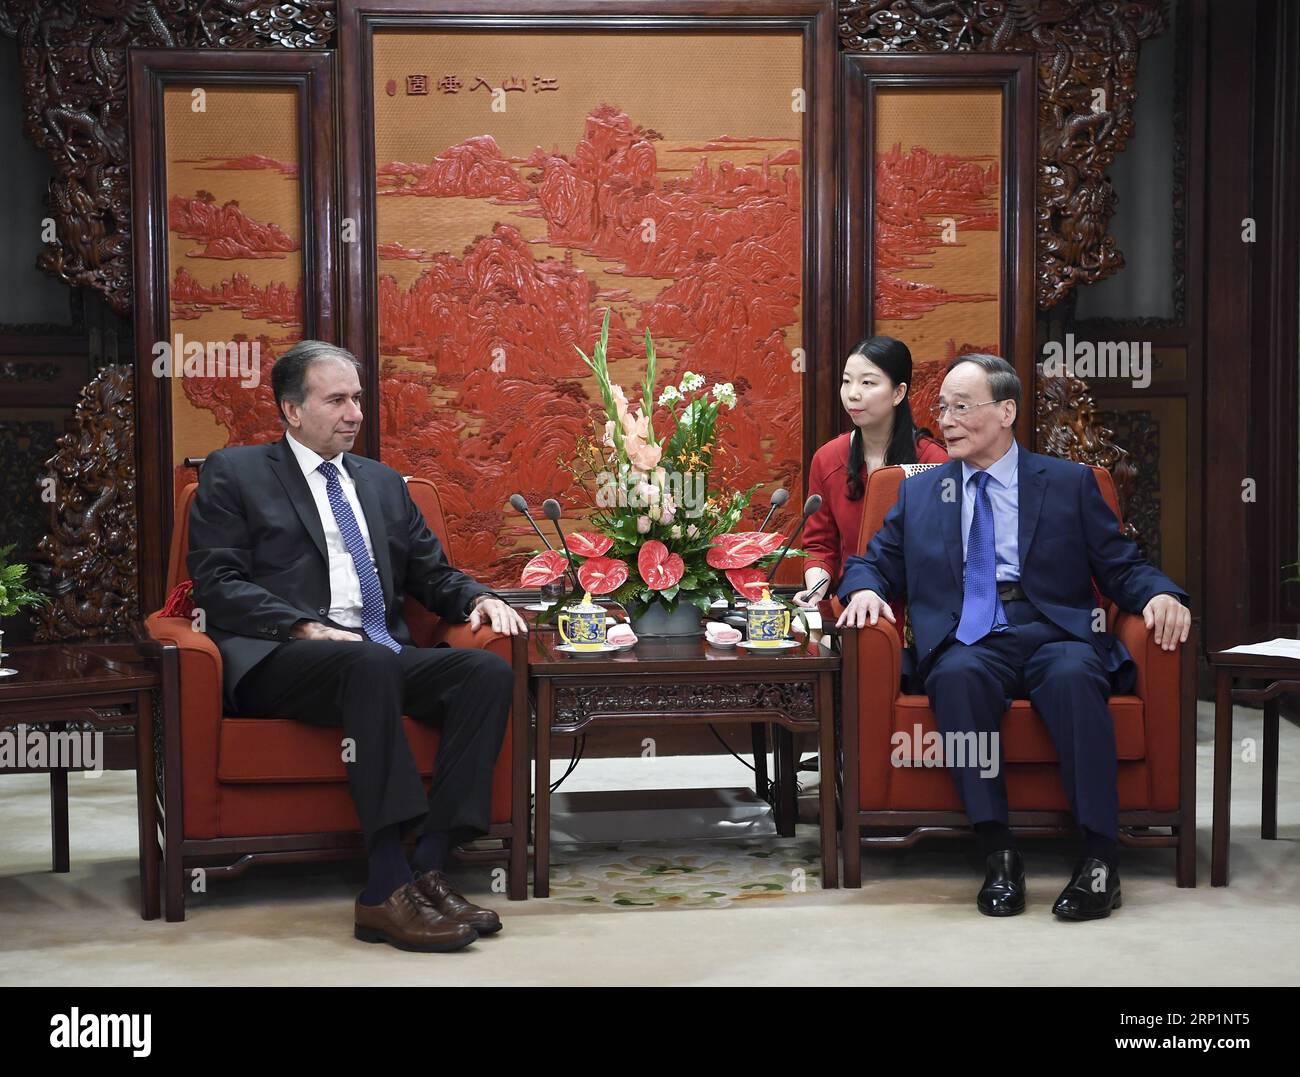 (180716) - PECHINO, 16 luglio 2018 - il vicepresidente cinese Wang Qishan (R) incontra una delegazione in visita del partito di proposta repubblicana dell'Argentina a Pechino, capitale della Cina, 16 luglio 2018. La delegazione era guidata da Humberto Schiavoni (L), presidente del partito. )(mcg) CHINA-BEIJING-ARGENTINA-WANG QISHAN-MEETING (CN) ZhangxLing PUBLICATIONxNOTxINxCHN Foto Stock